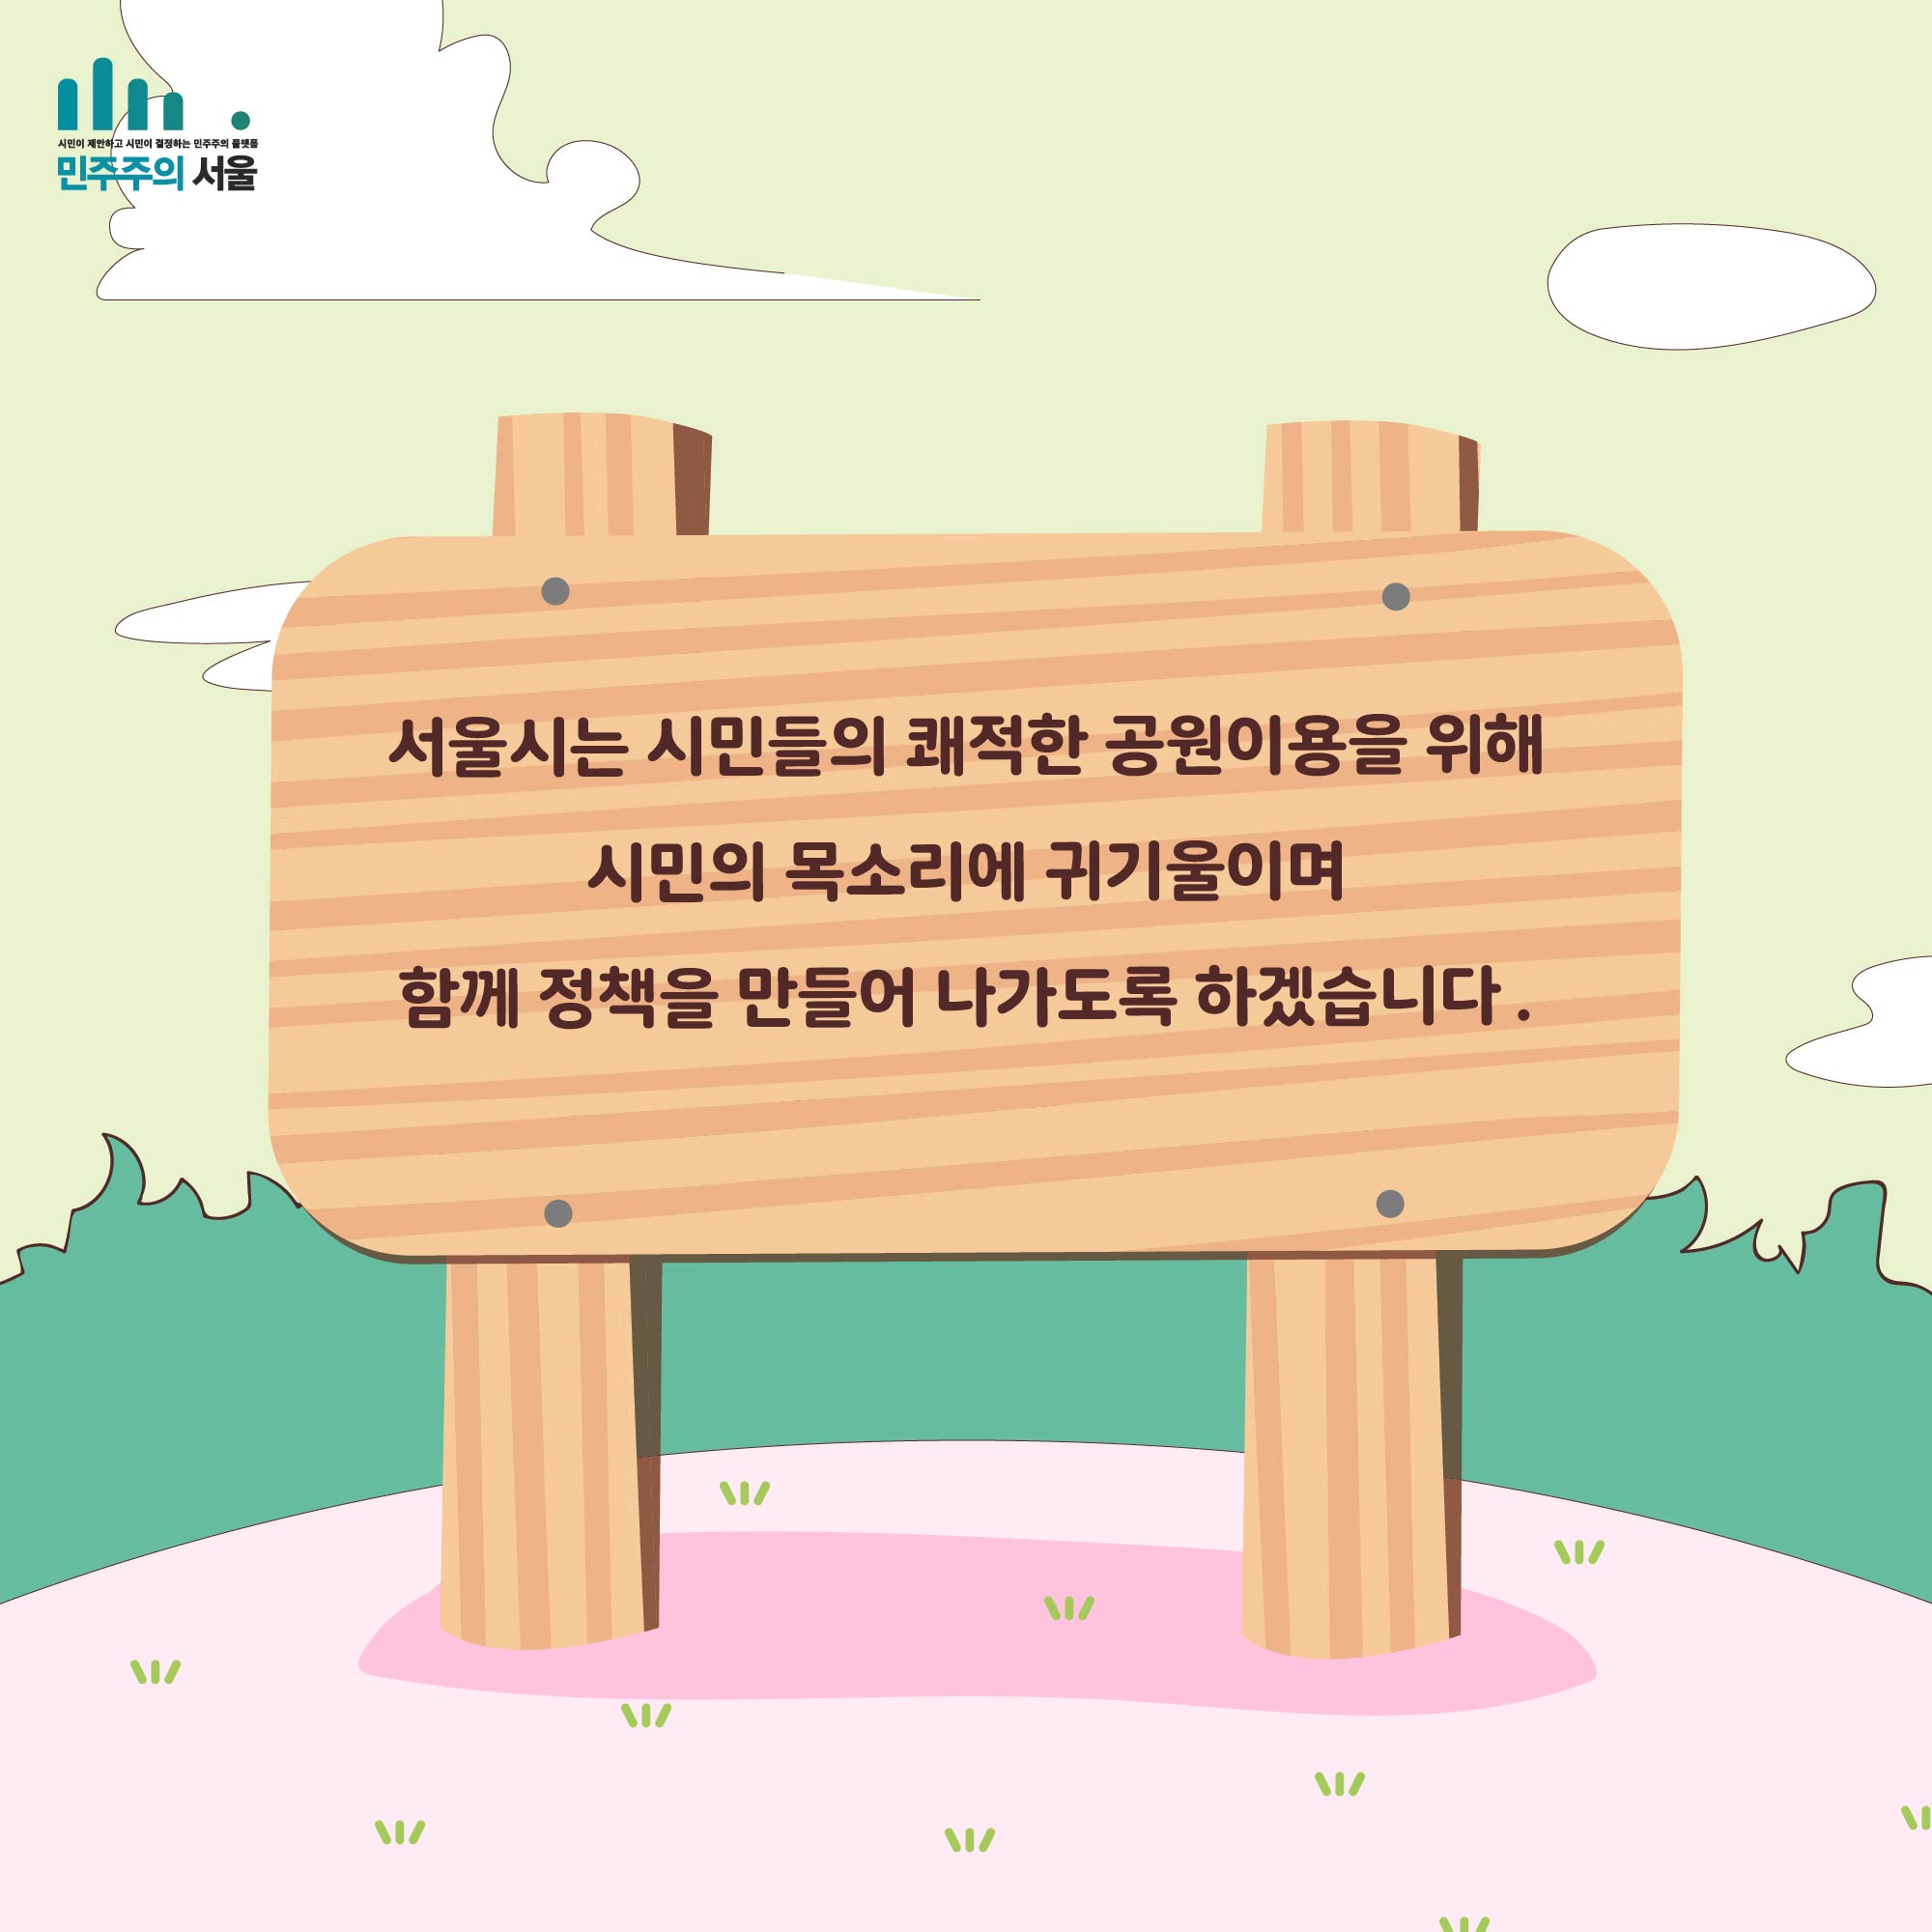 서울시는 시민들의 쾌적한 공원이용을 위해 시민의 목소리에 귀기울이며 함께 정책을 만들어 나가도록 하겠습니다.